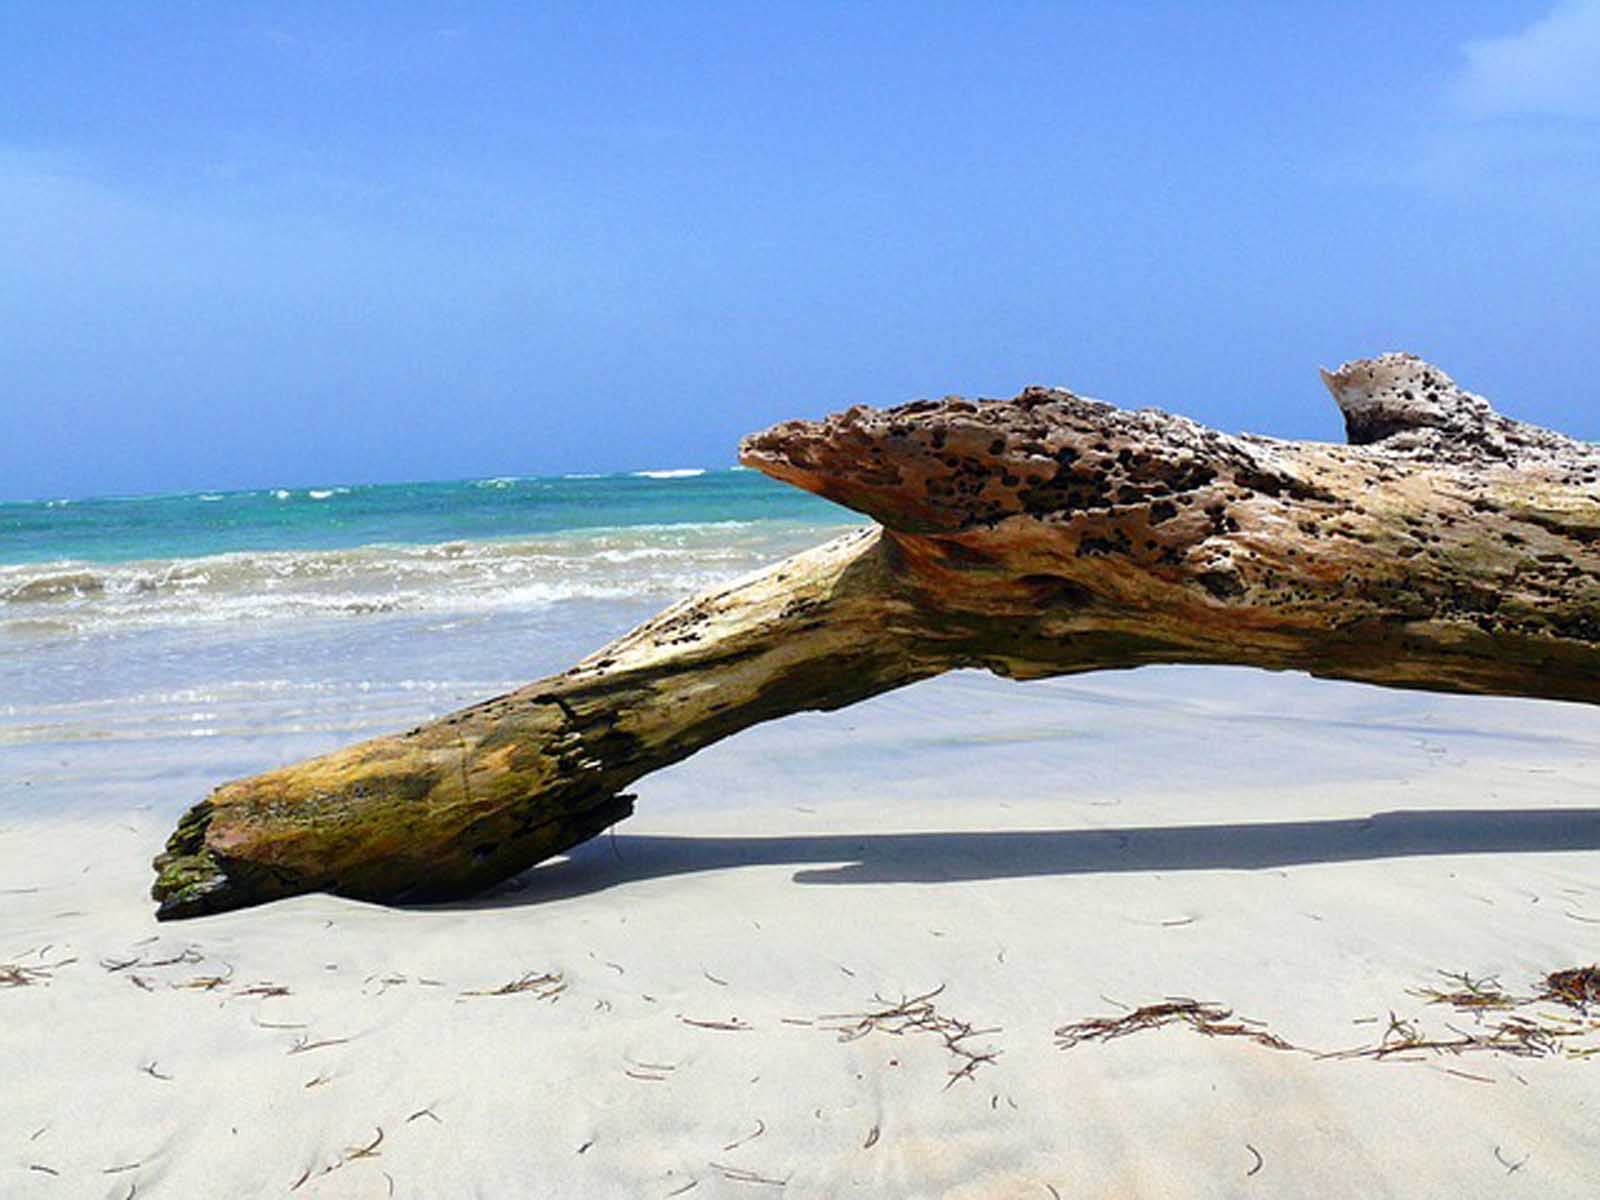 Playa Los Patos in the Dominican Republic